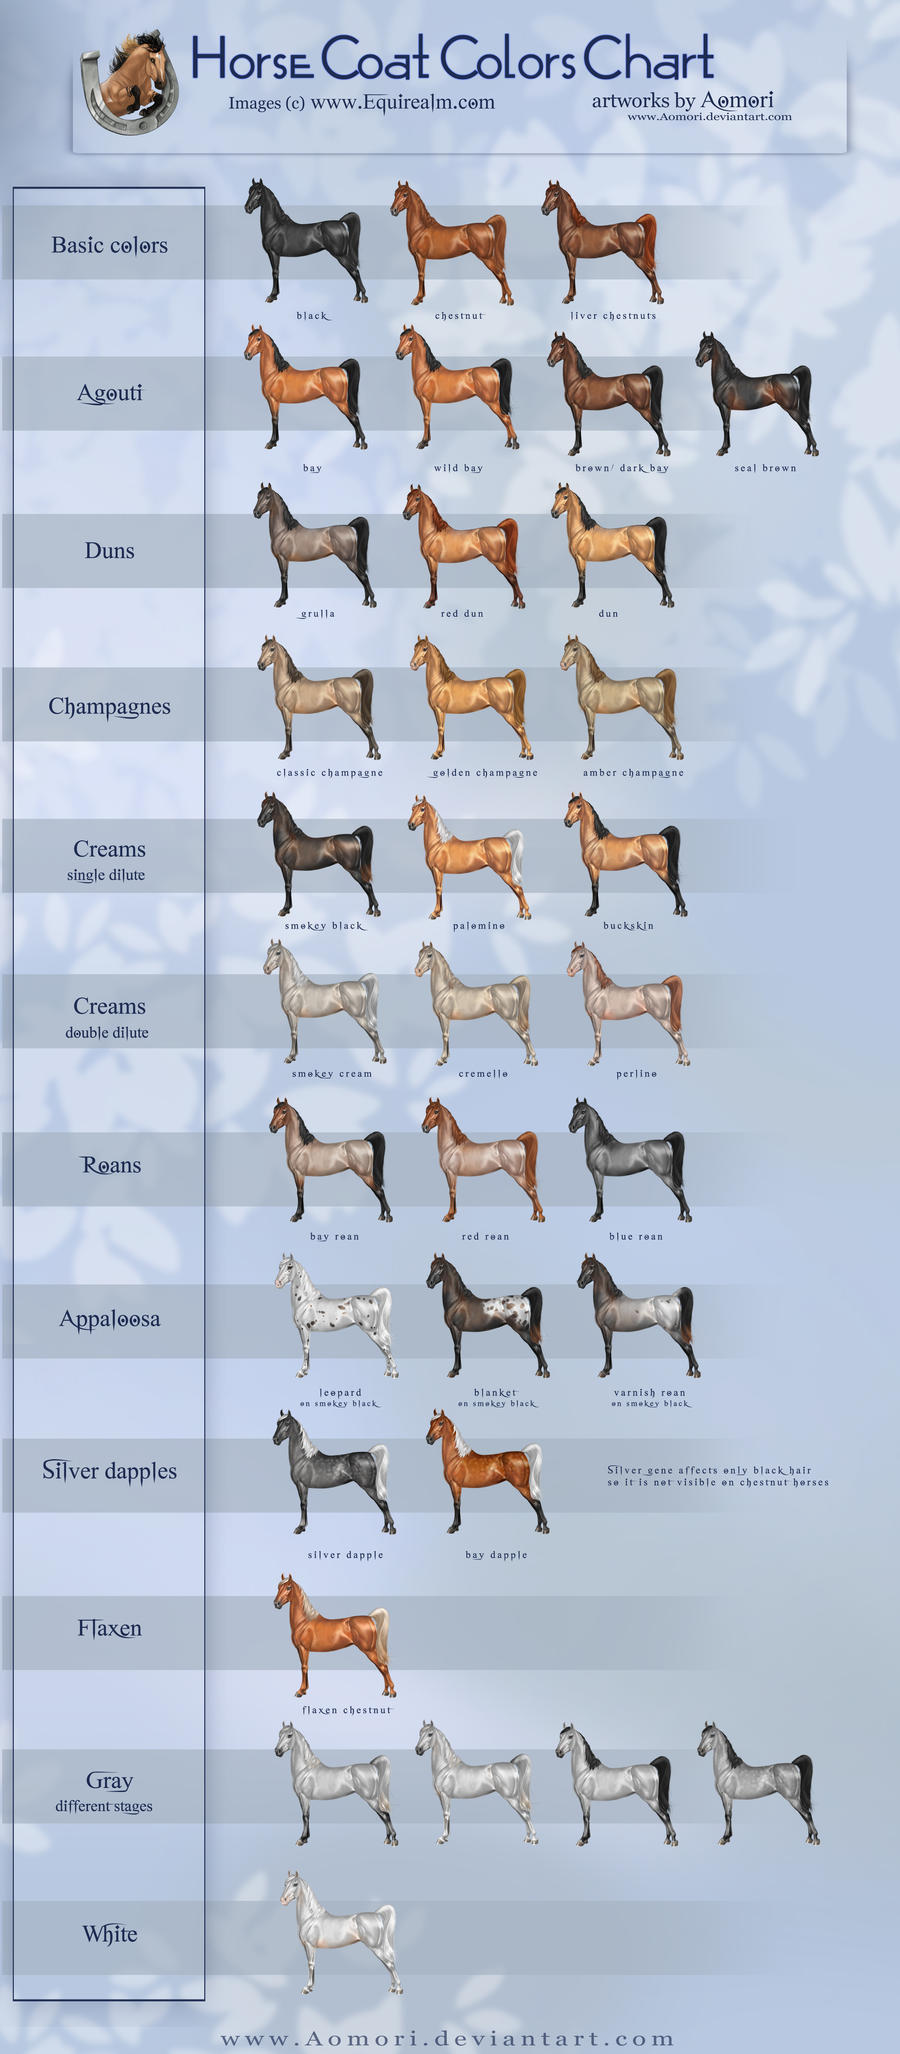 Horse coat colors chart